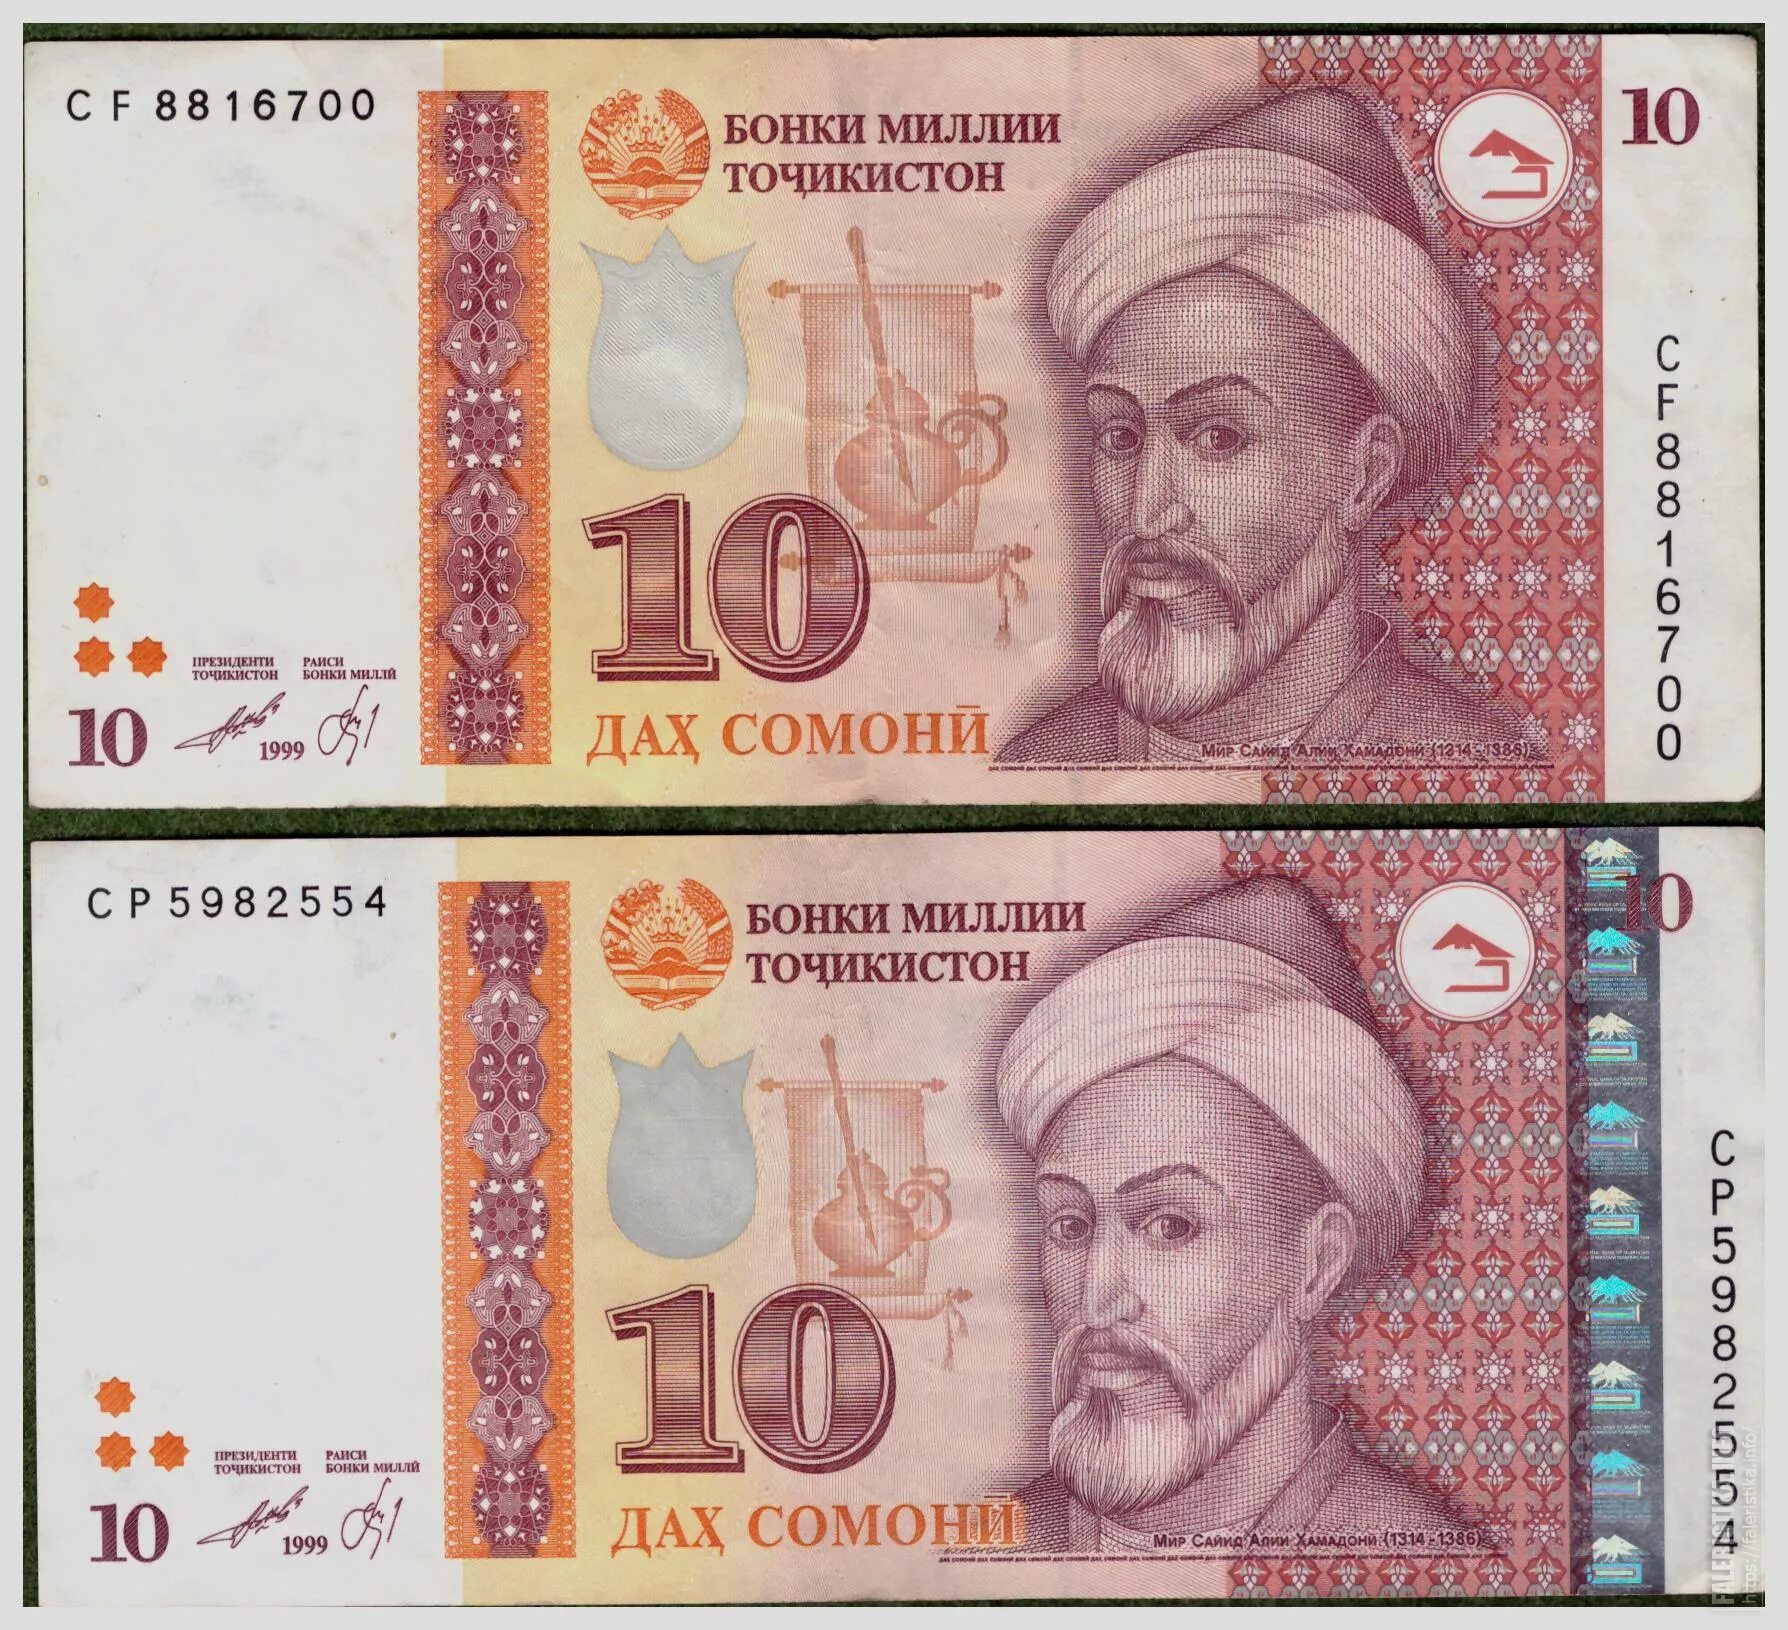 Таджикские деньги сколько. Деньги Таджикистана 500 Сомони. Деньги Таджикистана 10 Сомони. Купюра Таджикистана 500 Сомони. Купюра 500 Сомони.